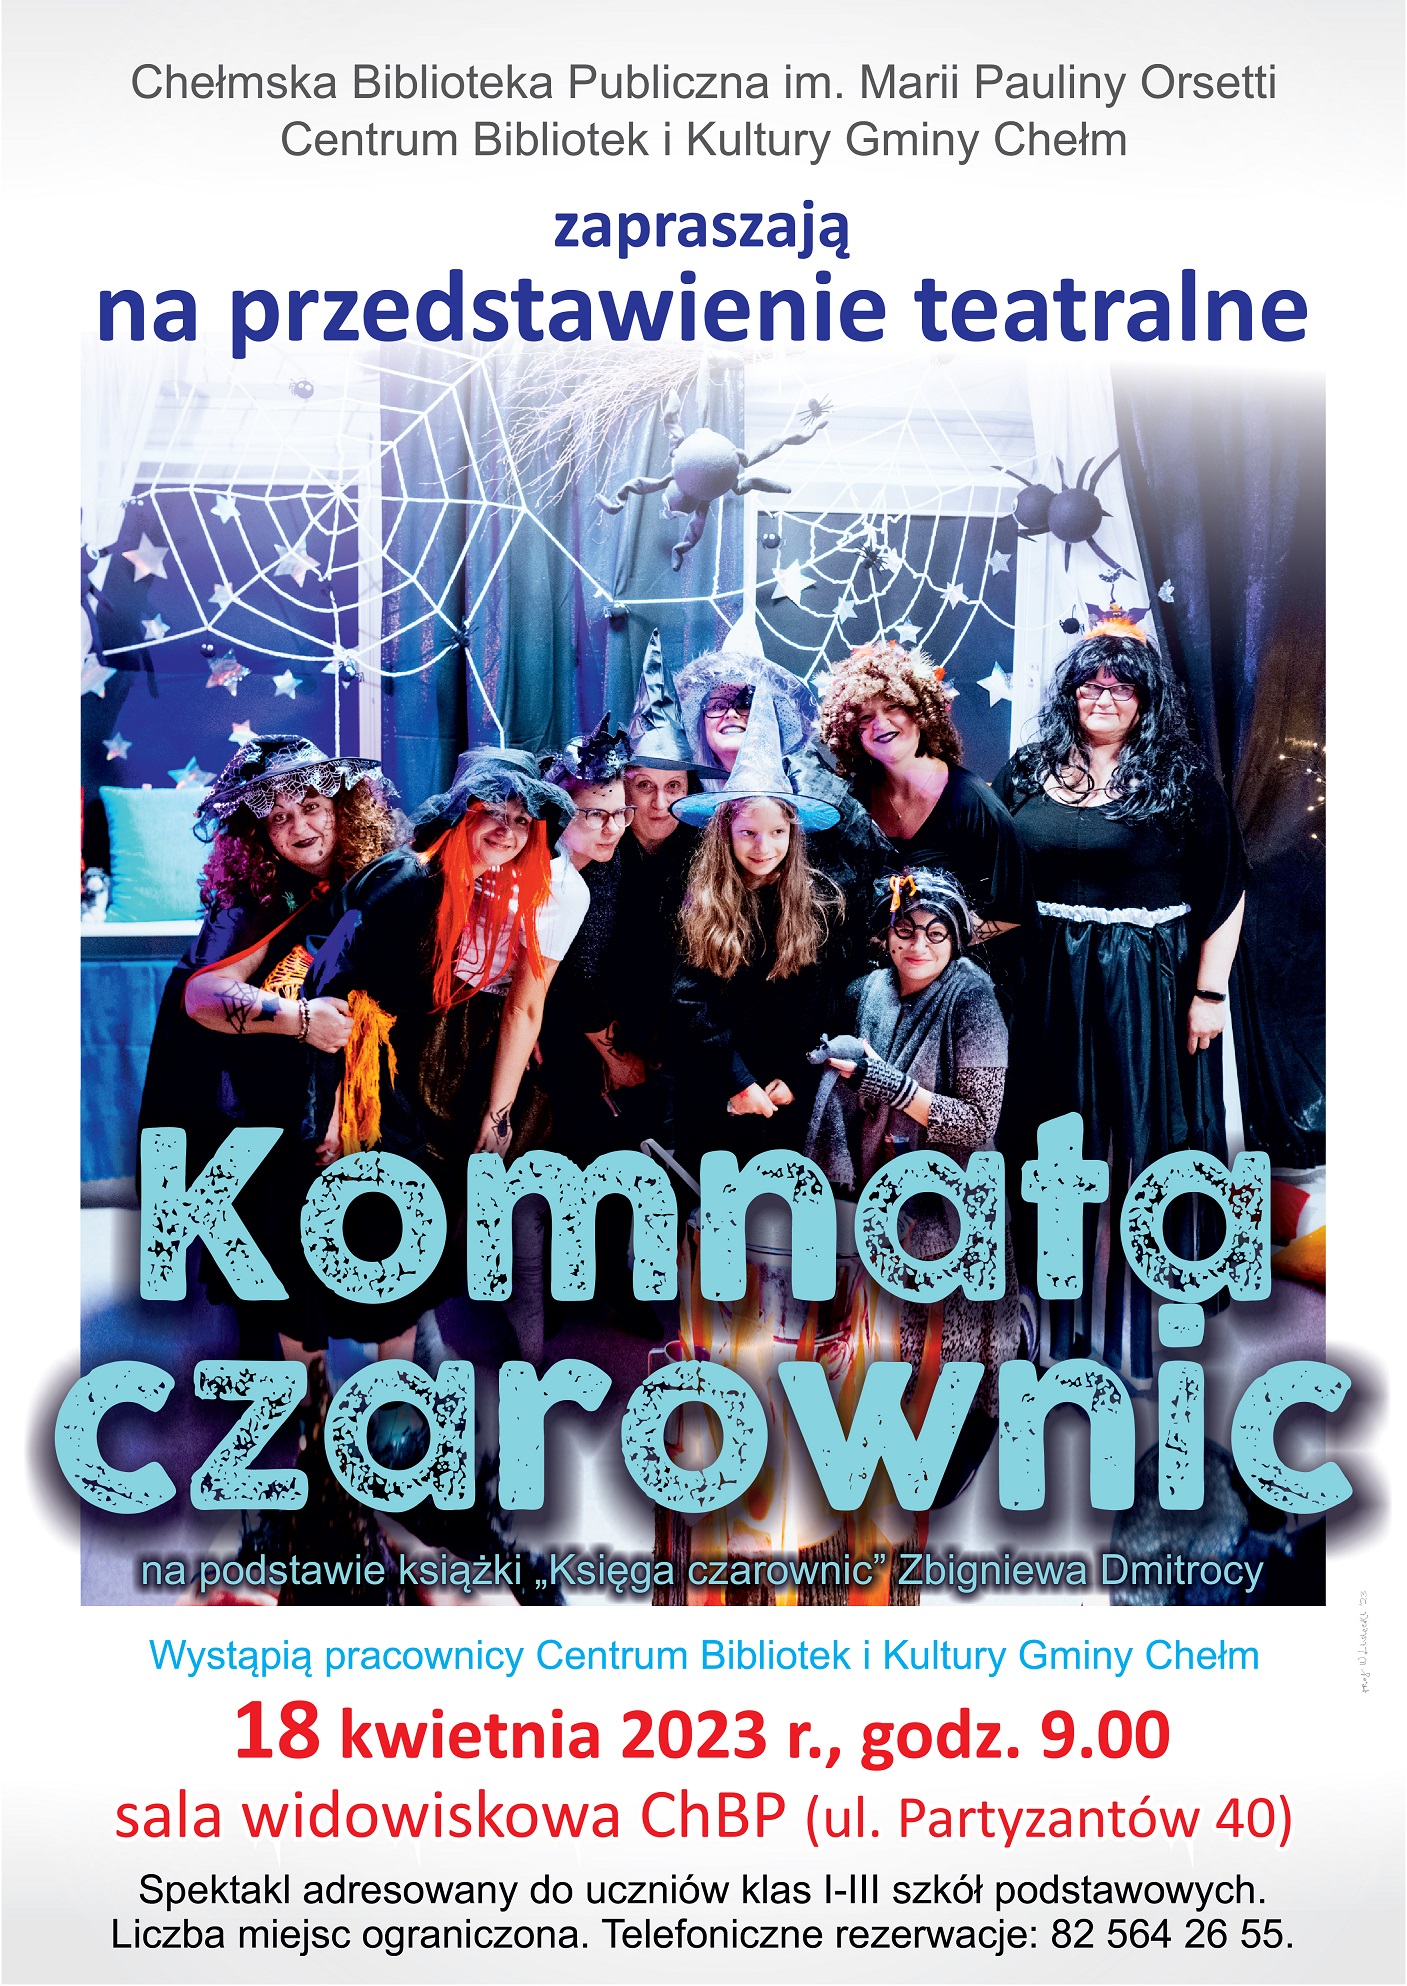 Zaproszenie na spektakl pt. "Komnata czarownic" - 18 kwietnia 2023 r., godz. 9.00, sala widowiskowa ChBP, ul. Partyzantów 40.